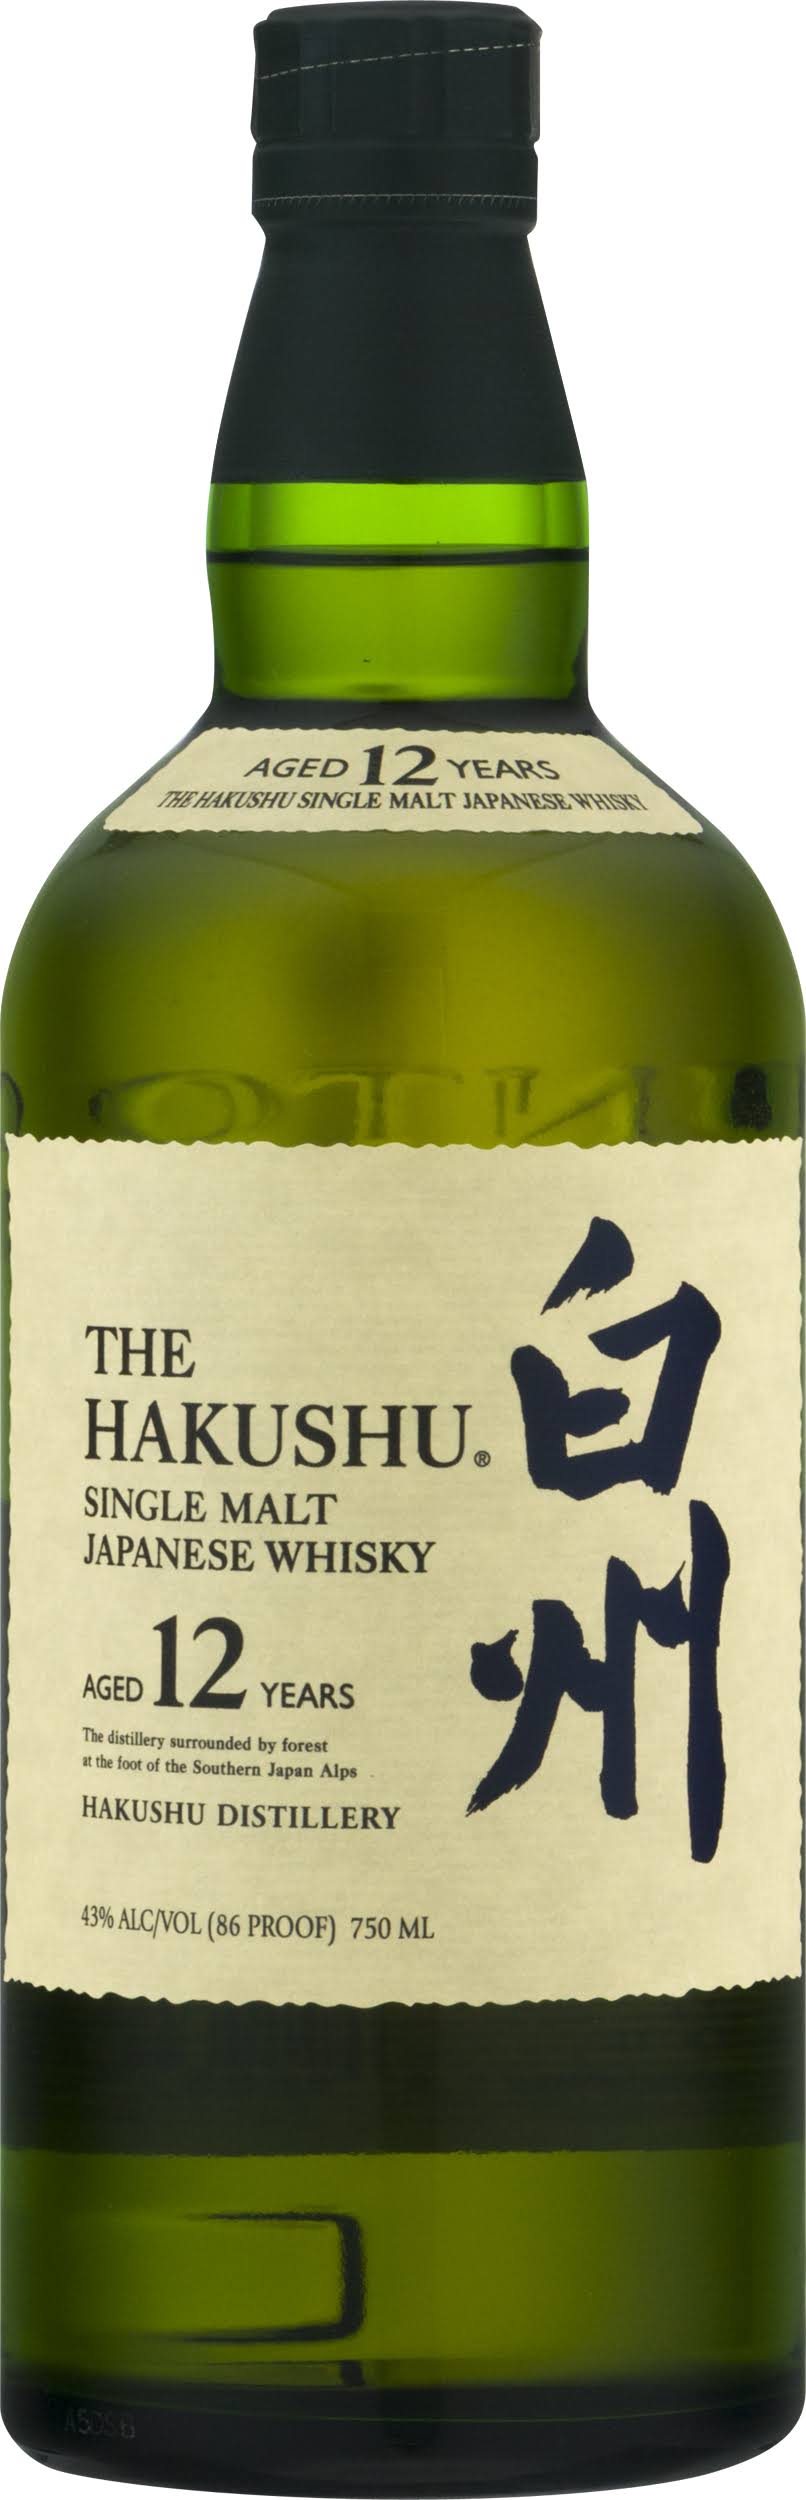 Hakushu 12 Year Single Malt Japanese Whisky - 750 ml bottle